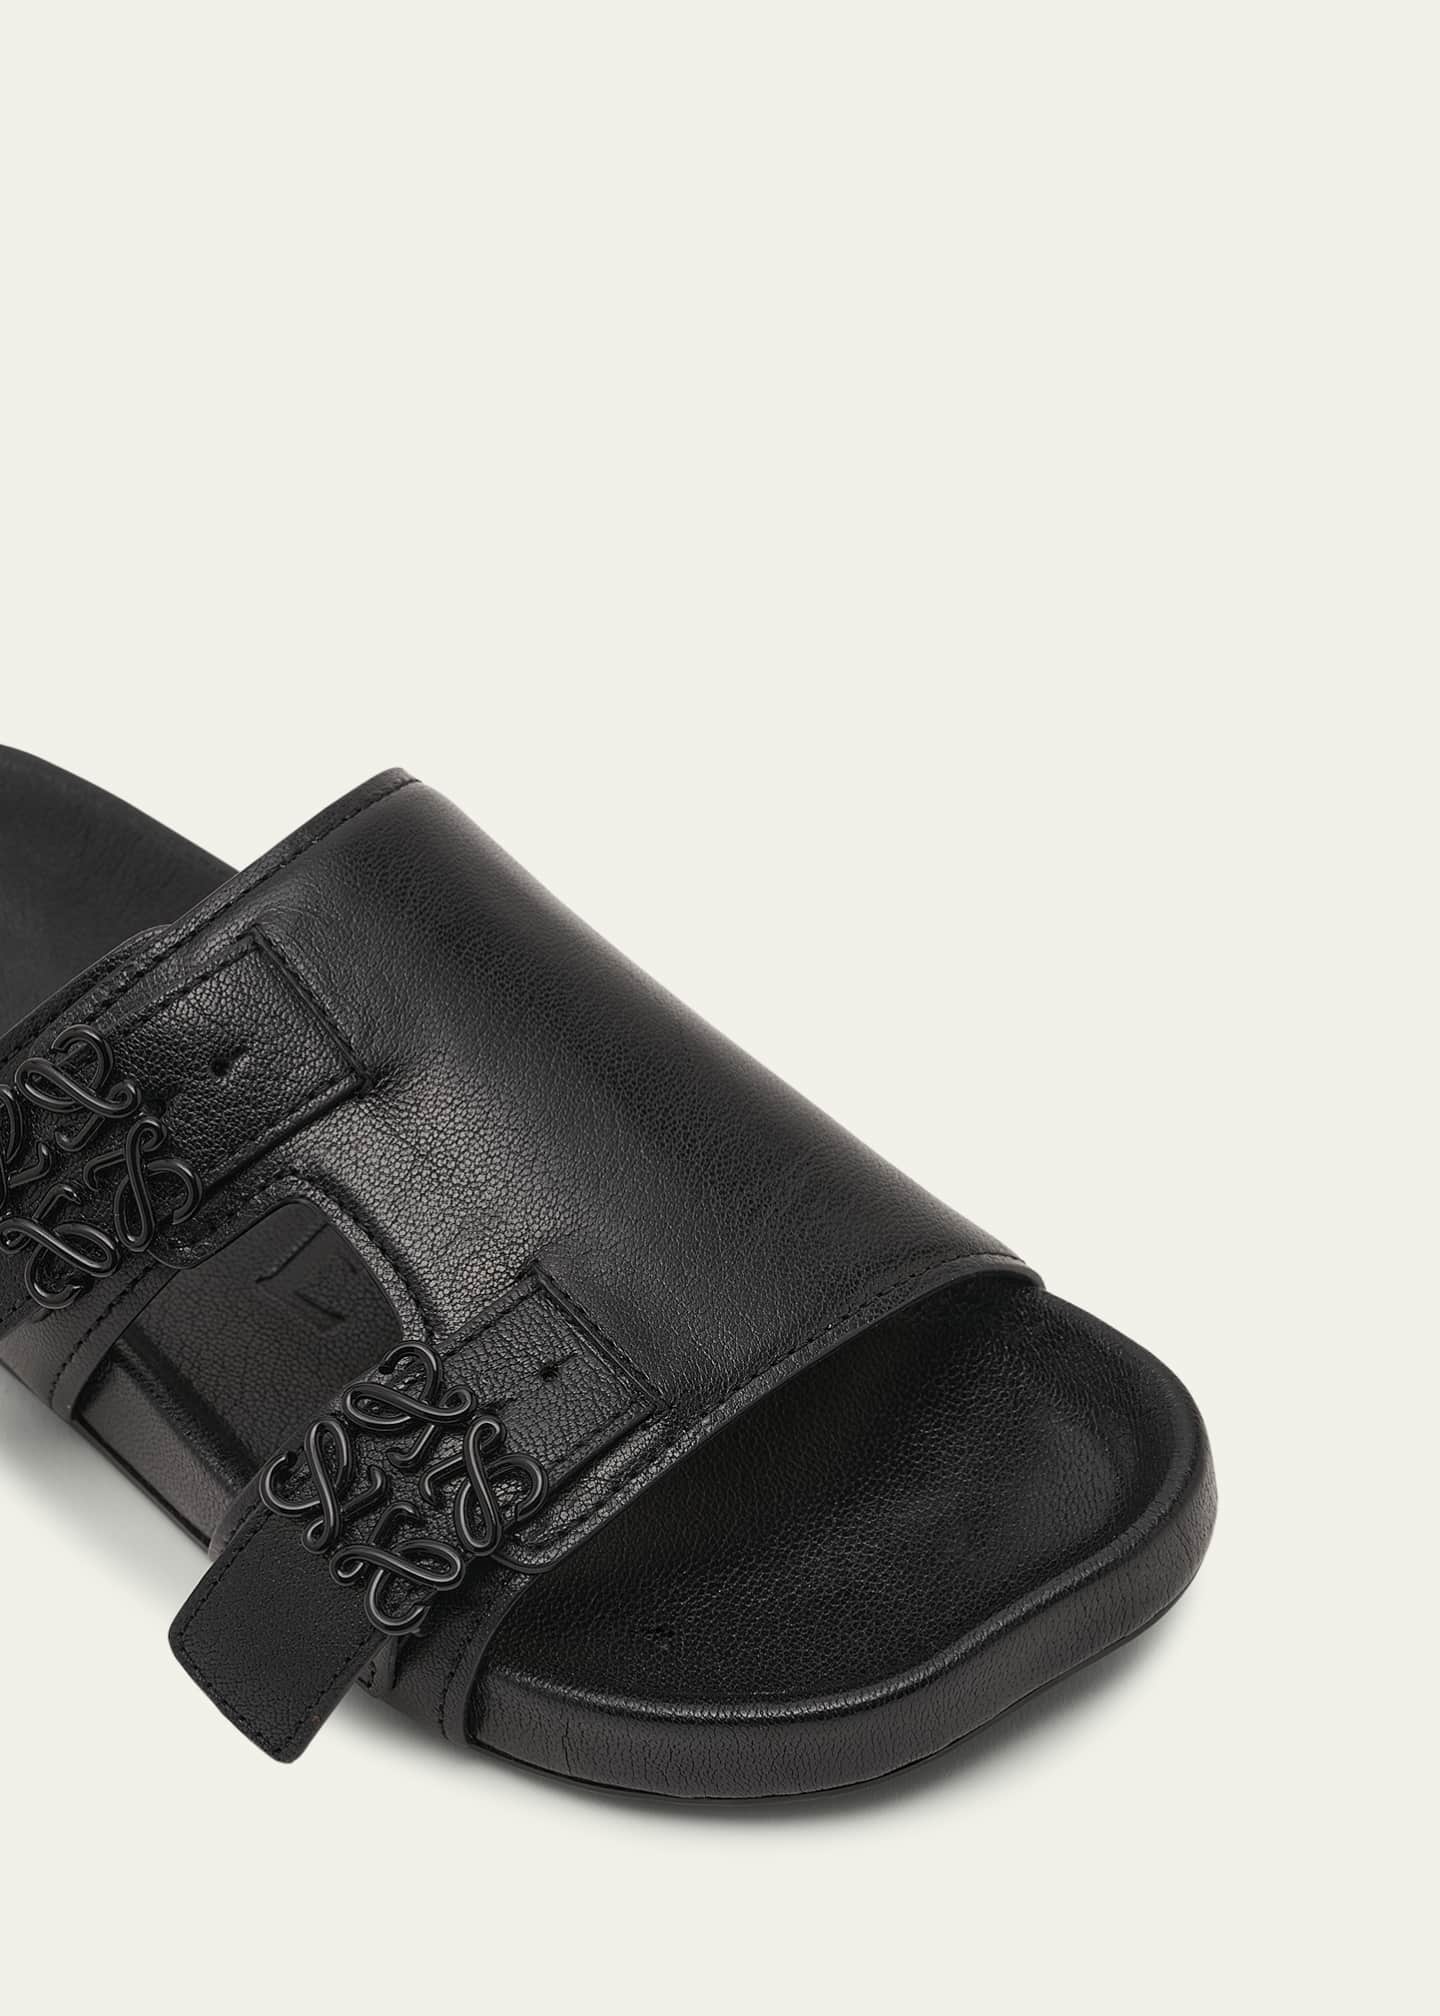 Loewe Ease Leather Dual-Buckle Slide Sandals - Bergdorf Goodman